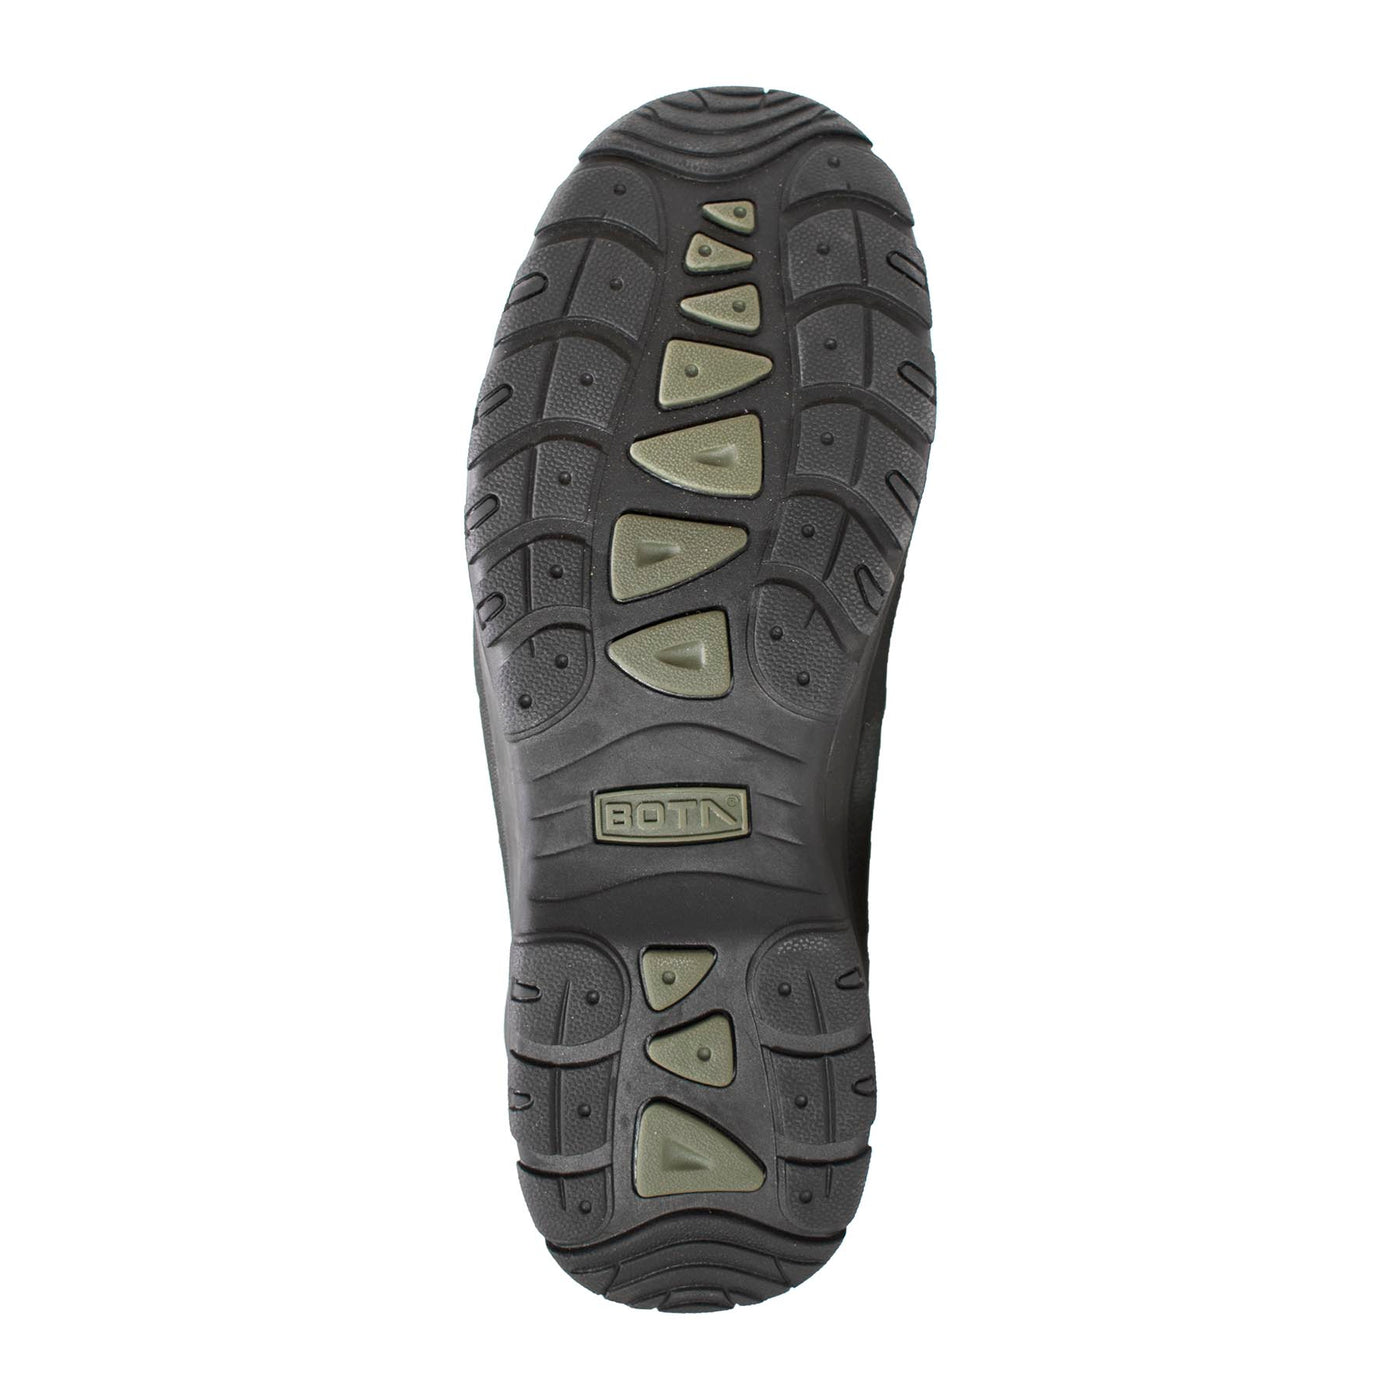 Womens Waterproof Nylon Winter Boot - Shop Genuine Leather men & women's boots online | AdTecFootWear